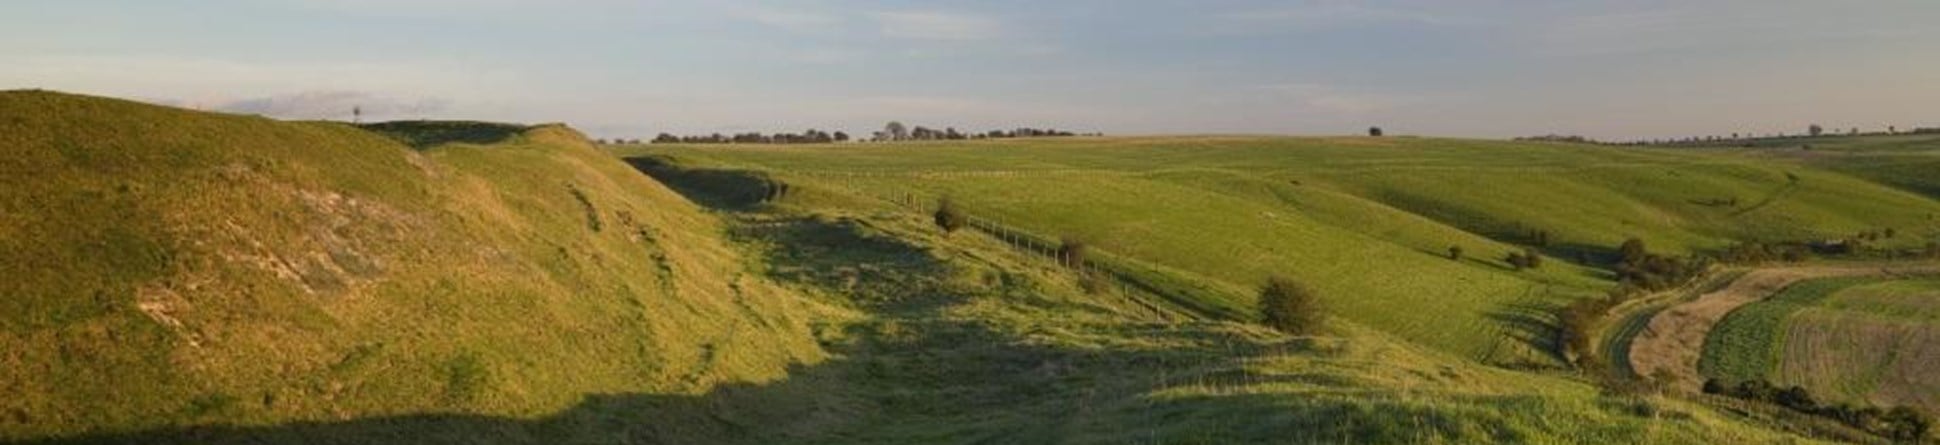 Landscape view of earthwork Liddington Castle, Liddington, Wiltshire.